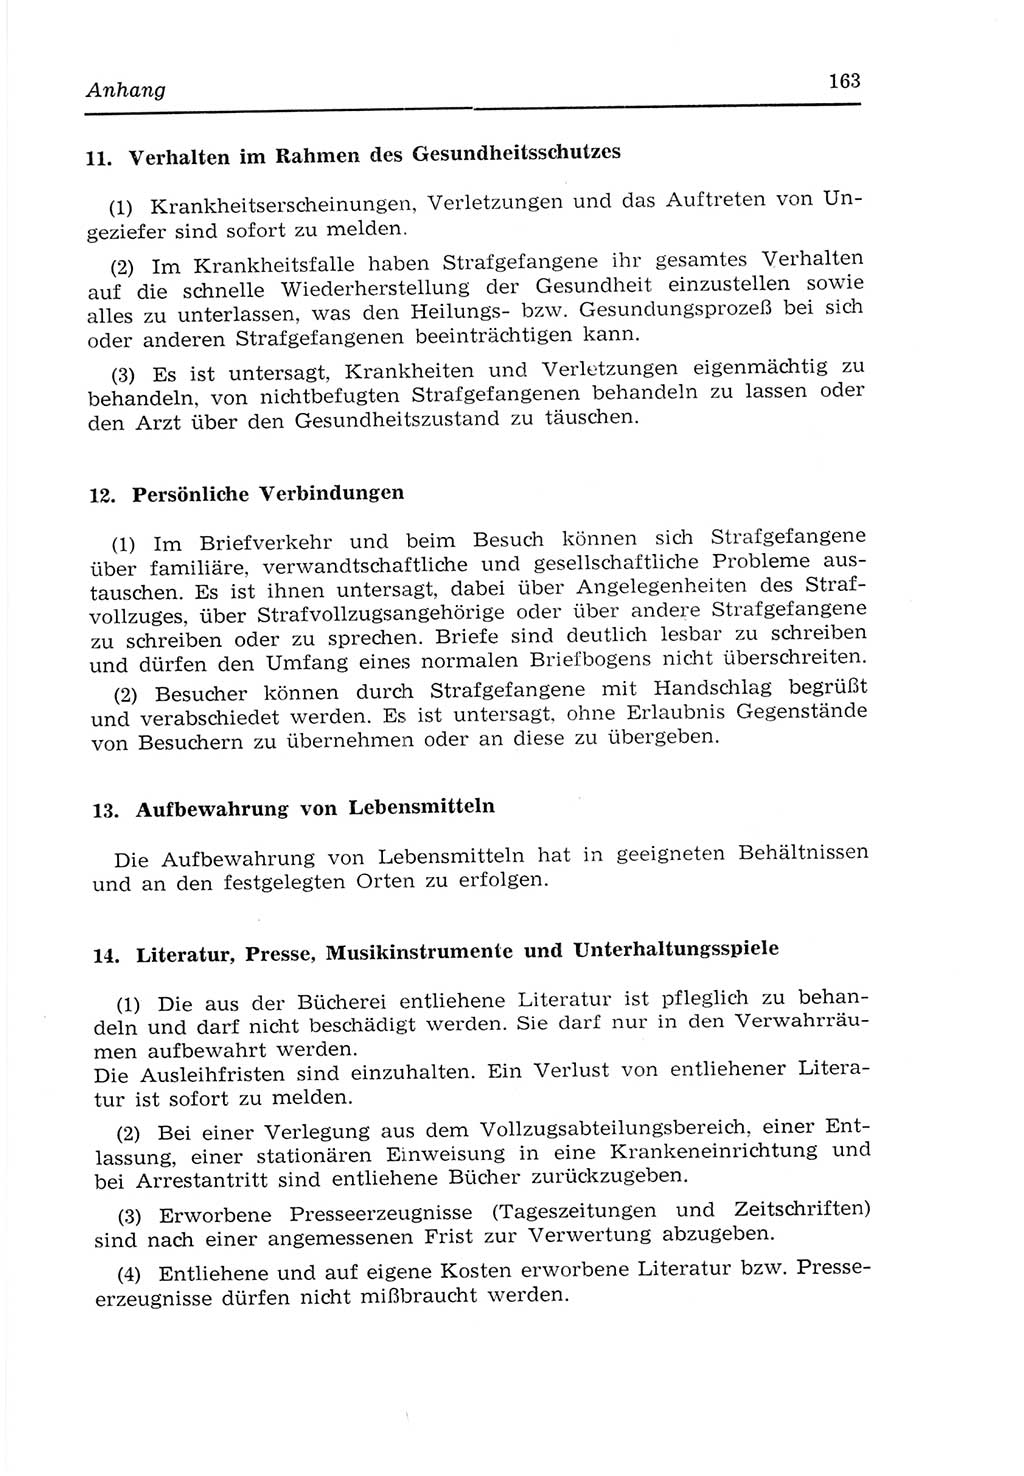 Strafvollzugs- und Wiedereingliederungsgesetz (SVWG) der Deutschen Demokratischen Republik (DDR) 1968, Seite 163 (SVWG DDR 1968, S. 163)